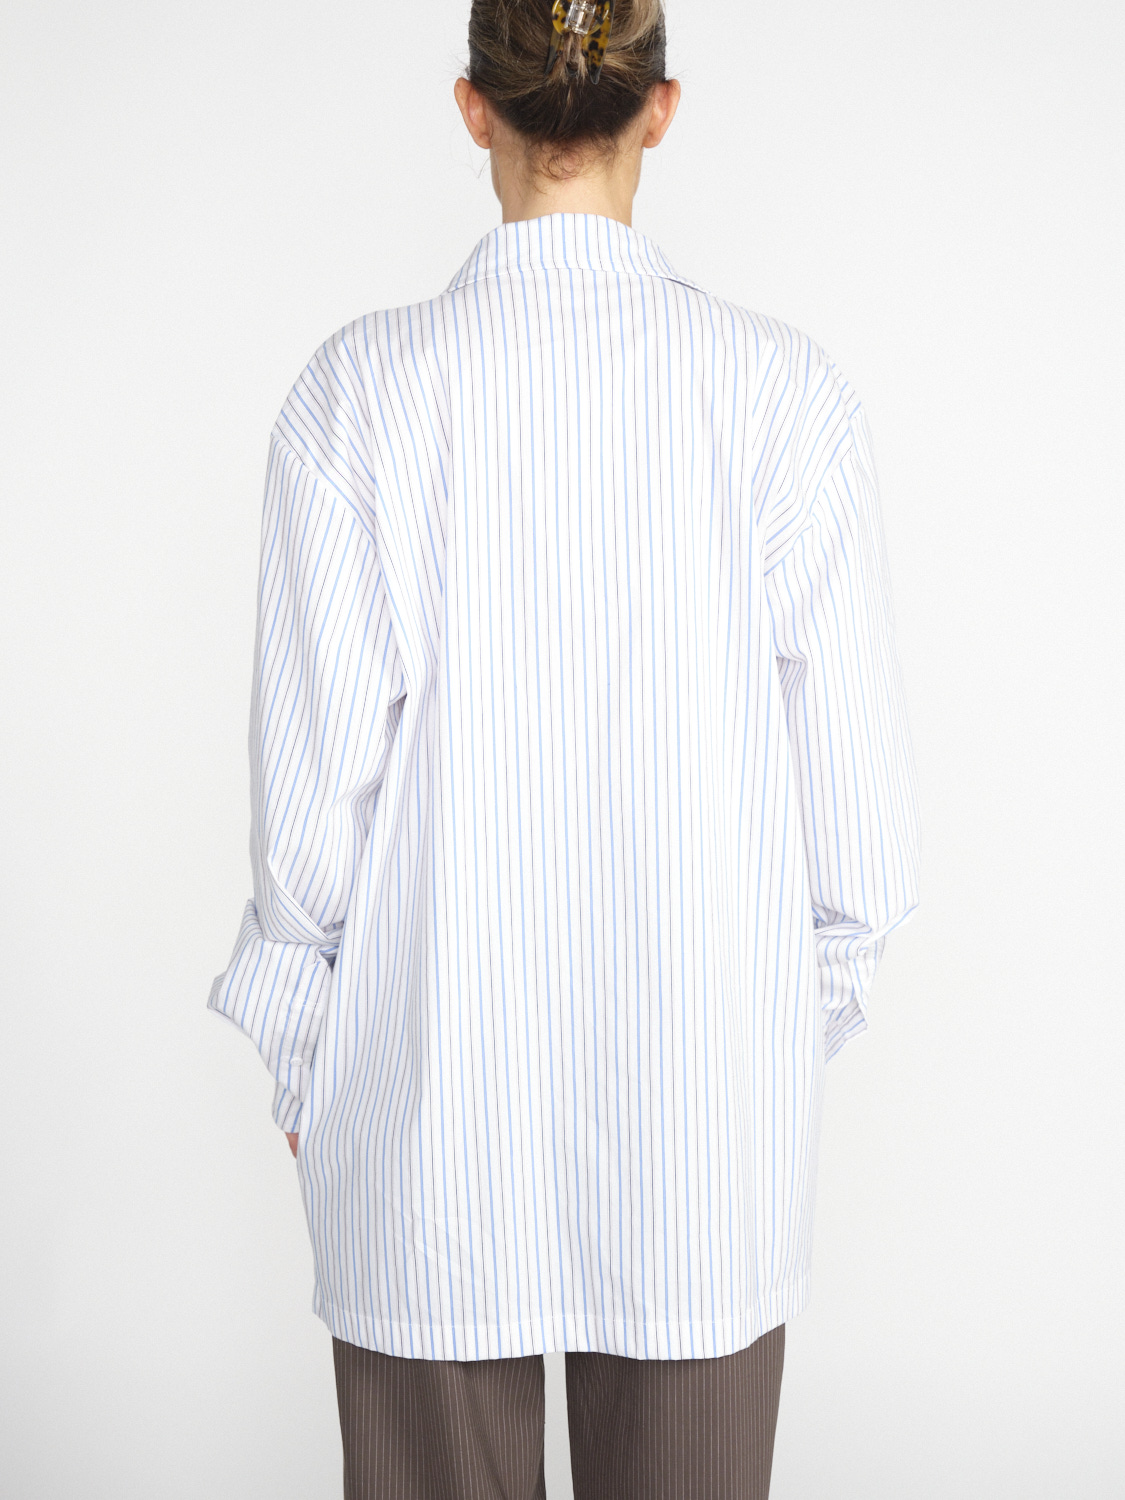 Ottolinger Oversized Hemd mit Streifen-Design weiß S